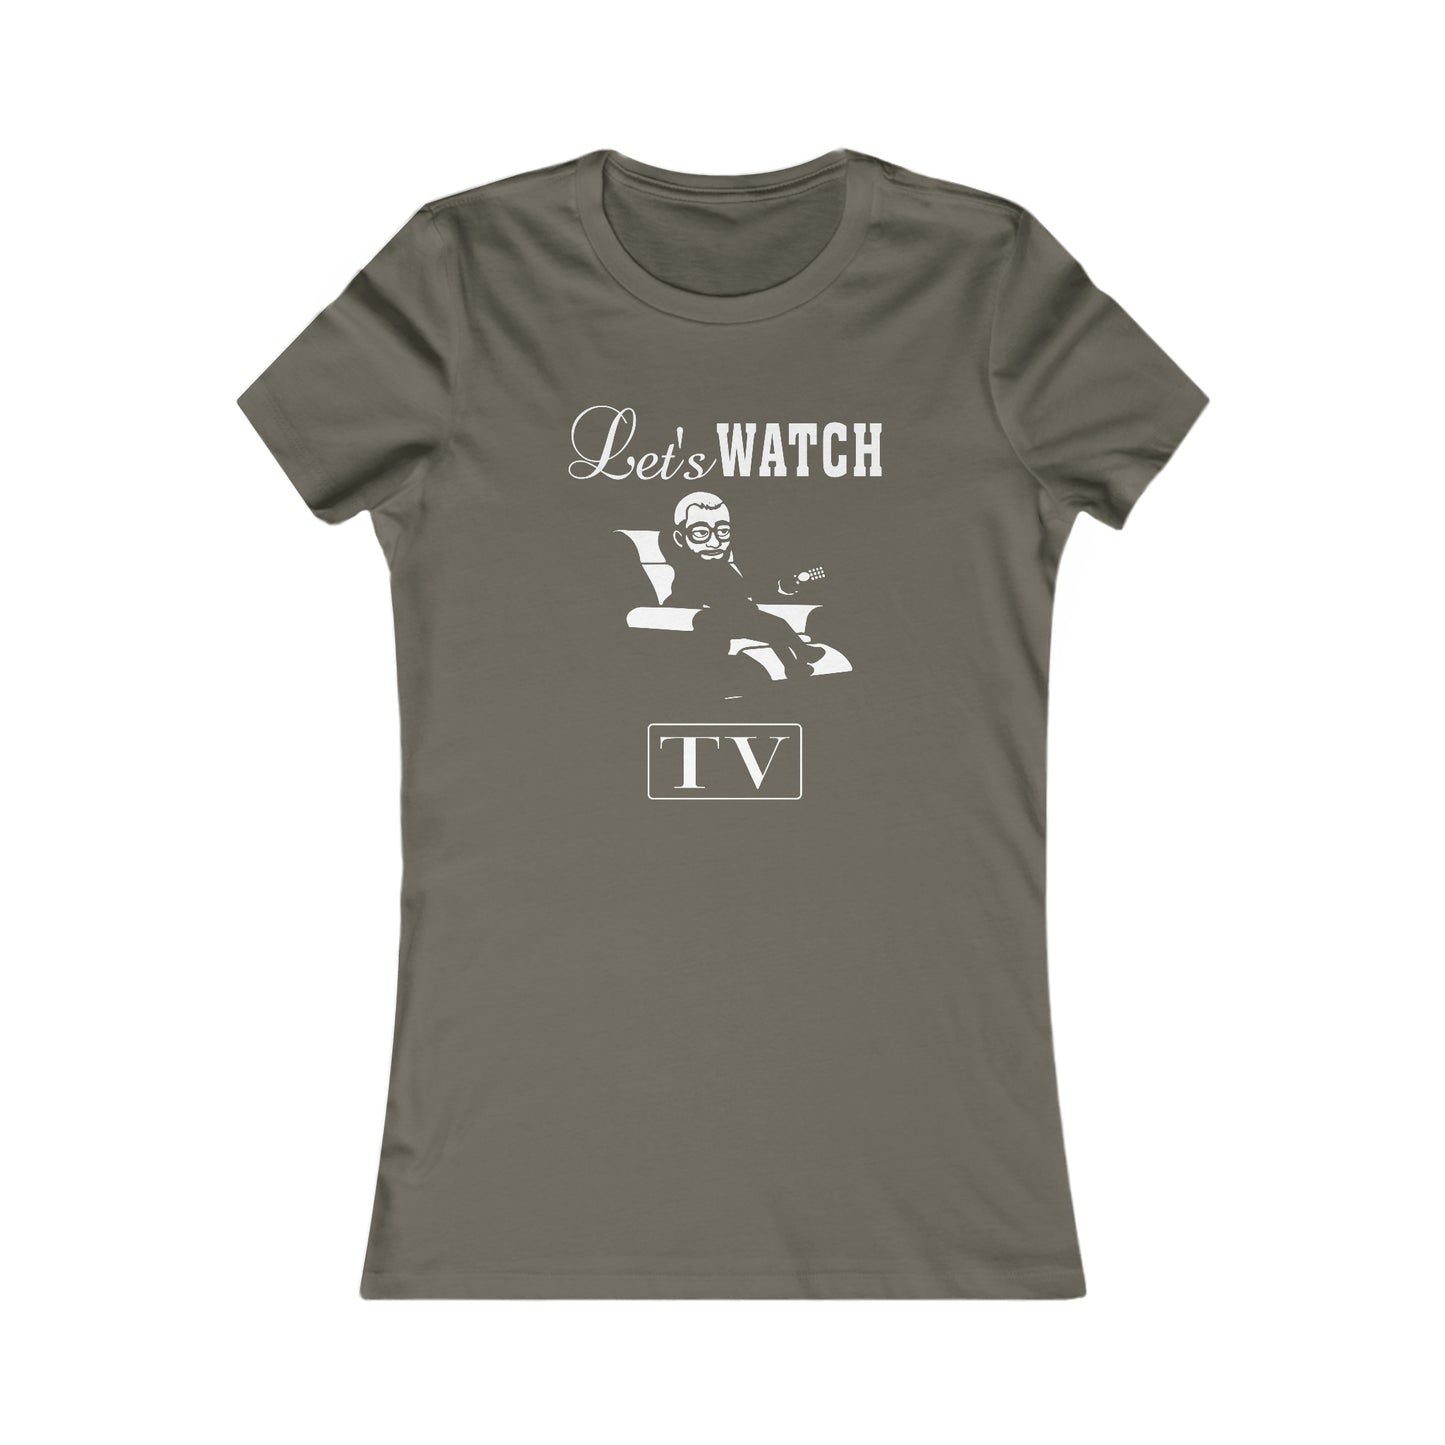 Jay Watch Let's Watch TV - Women's Favorite Tee